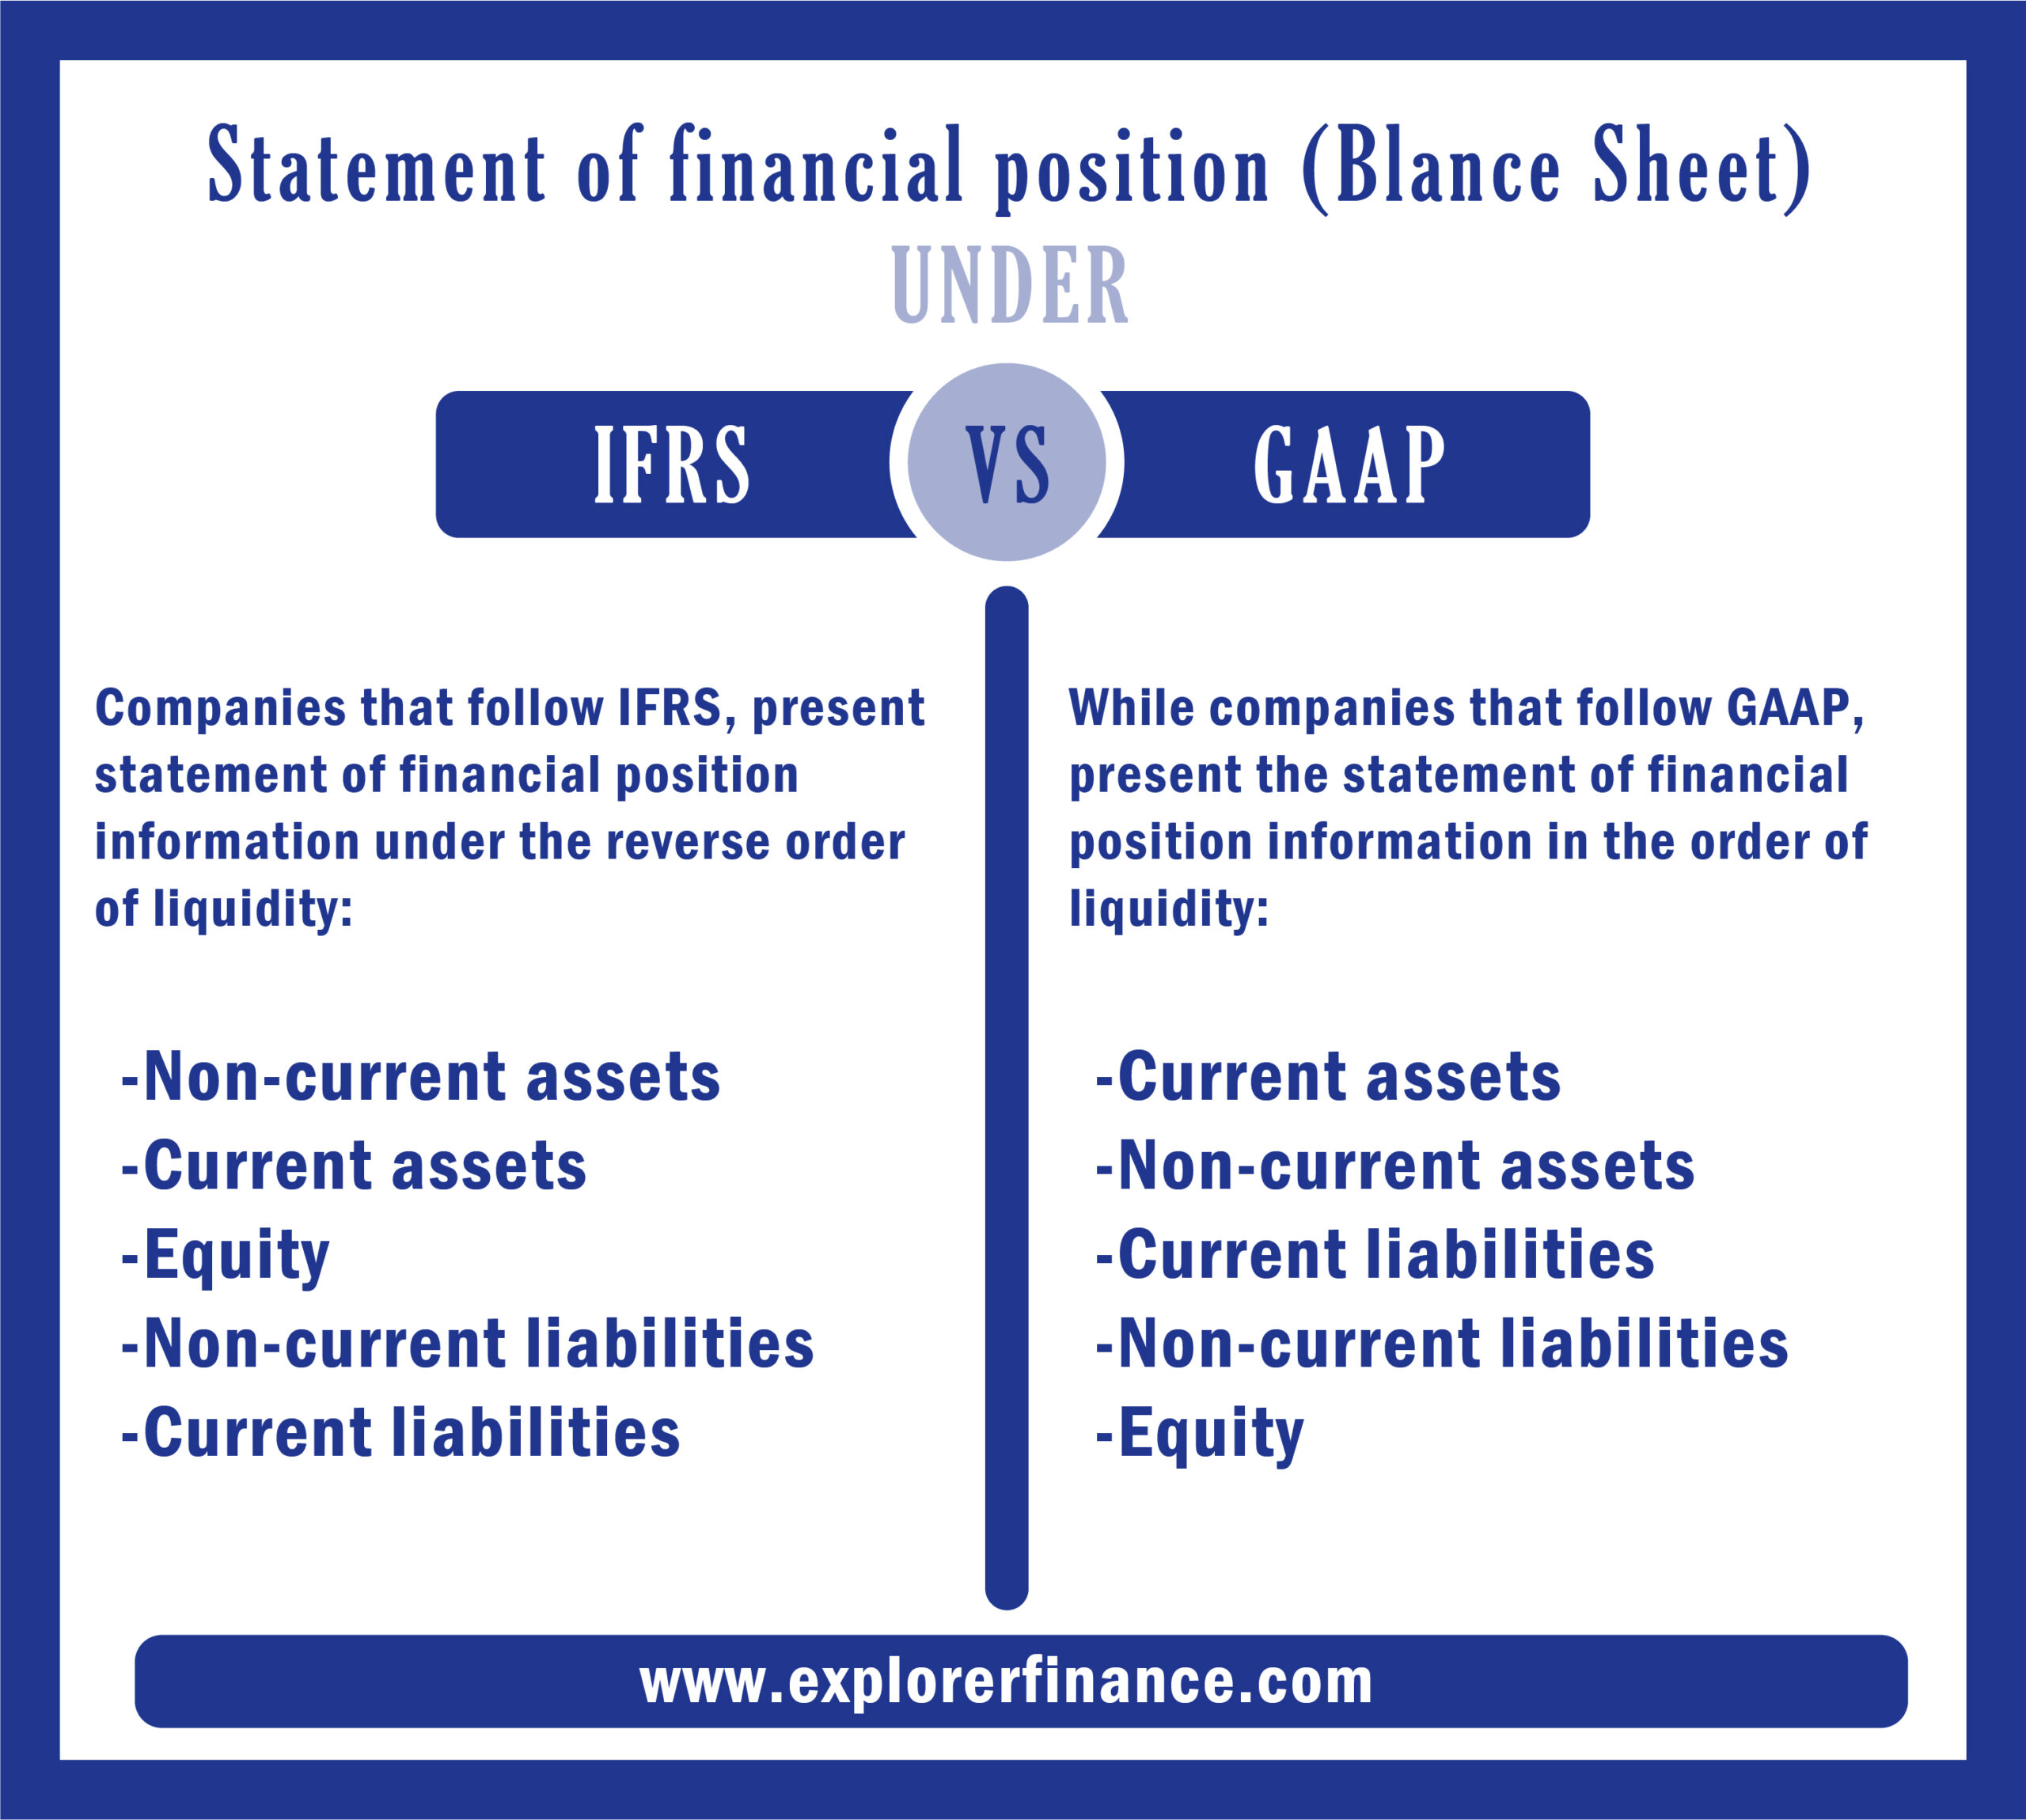 IFRS VS GAAP AND BALANCE SHEET